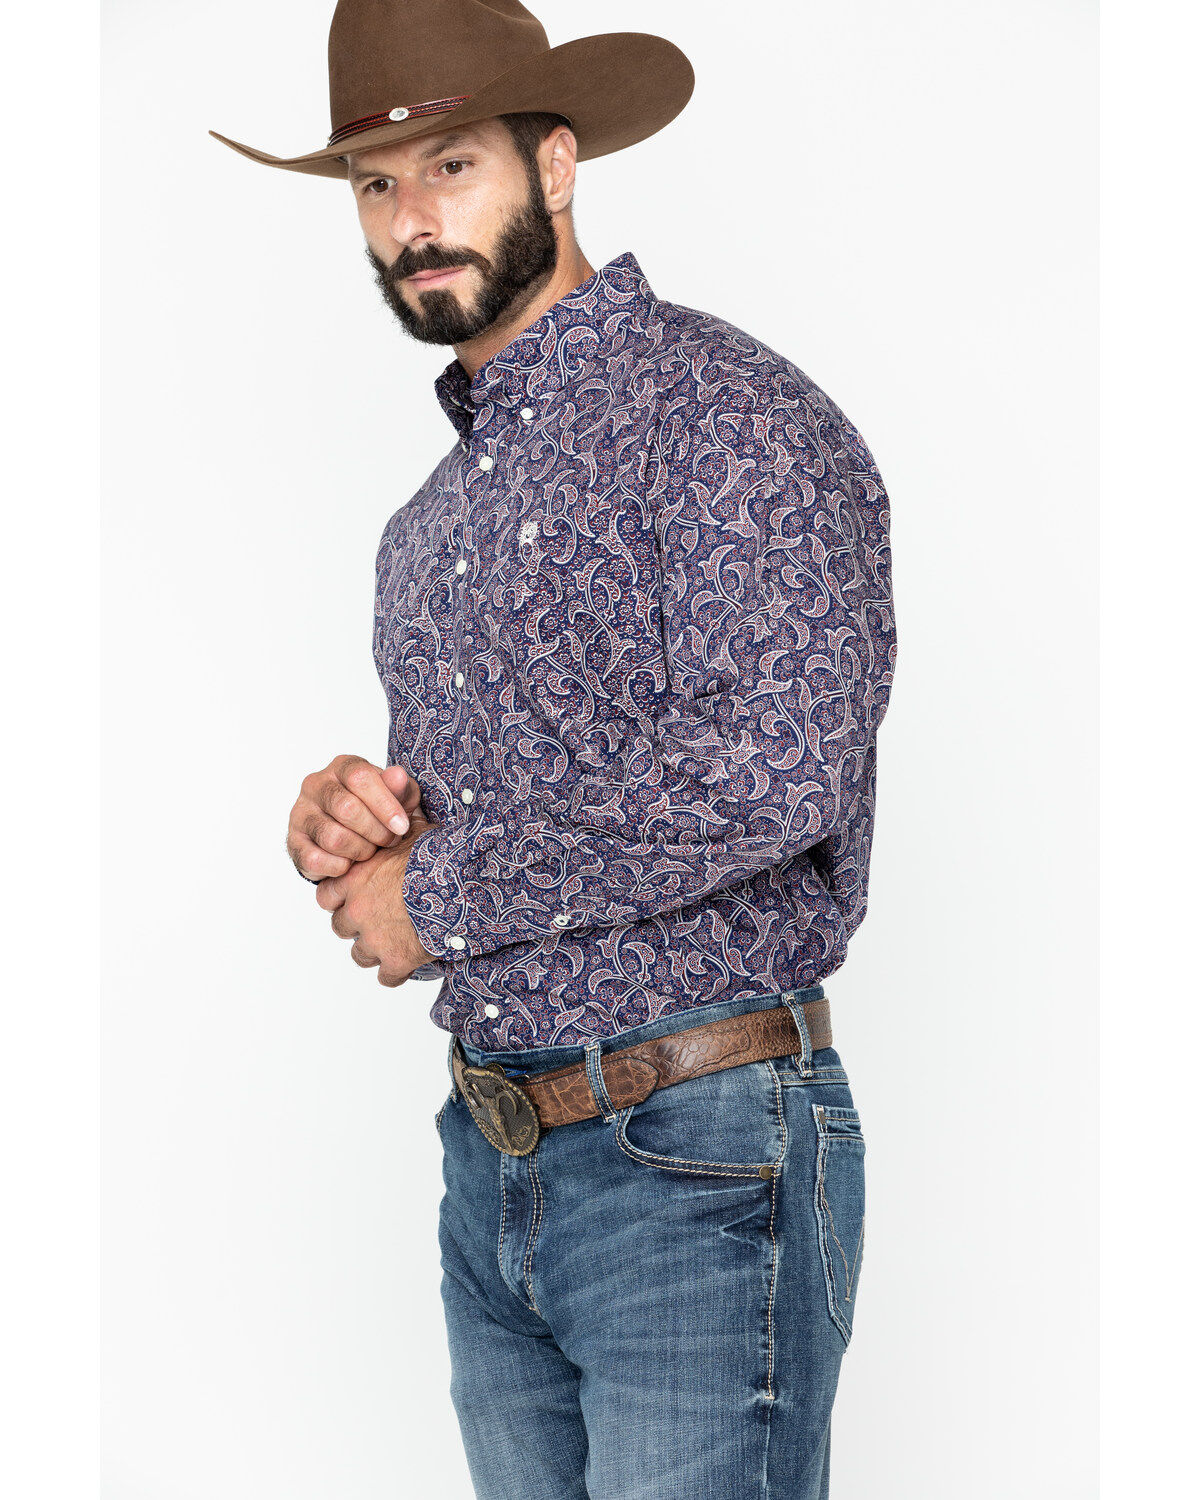 boot barn cowboy shirts